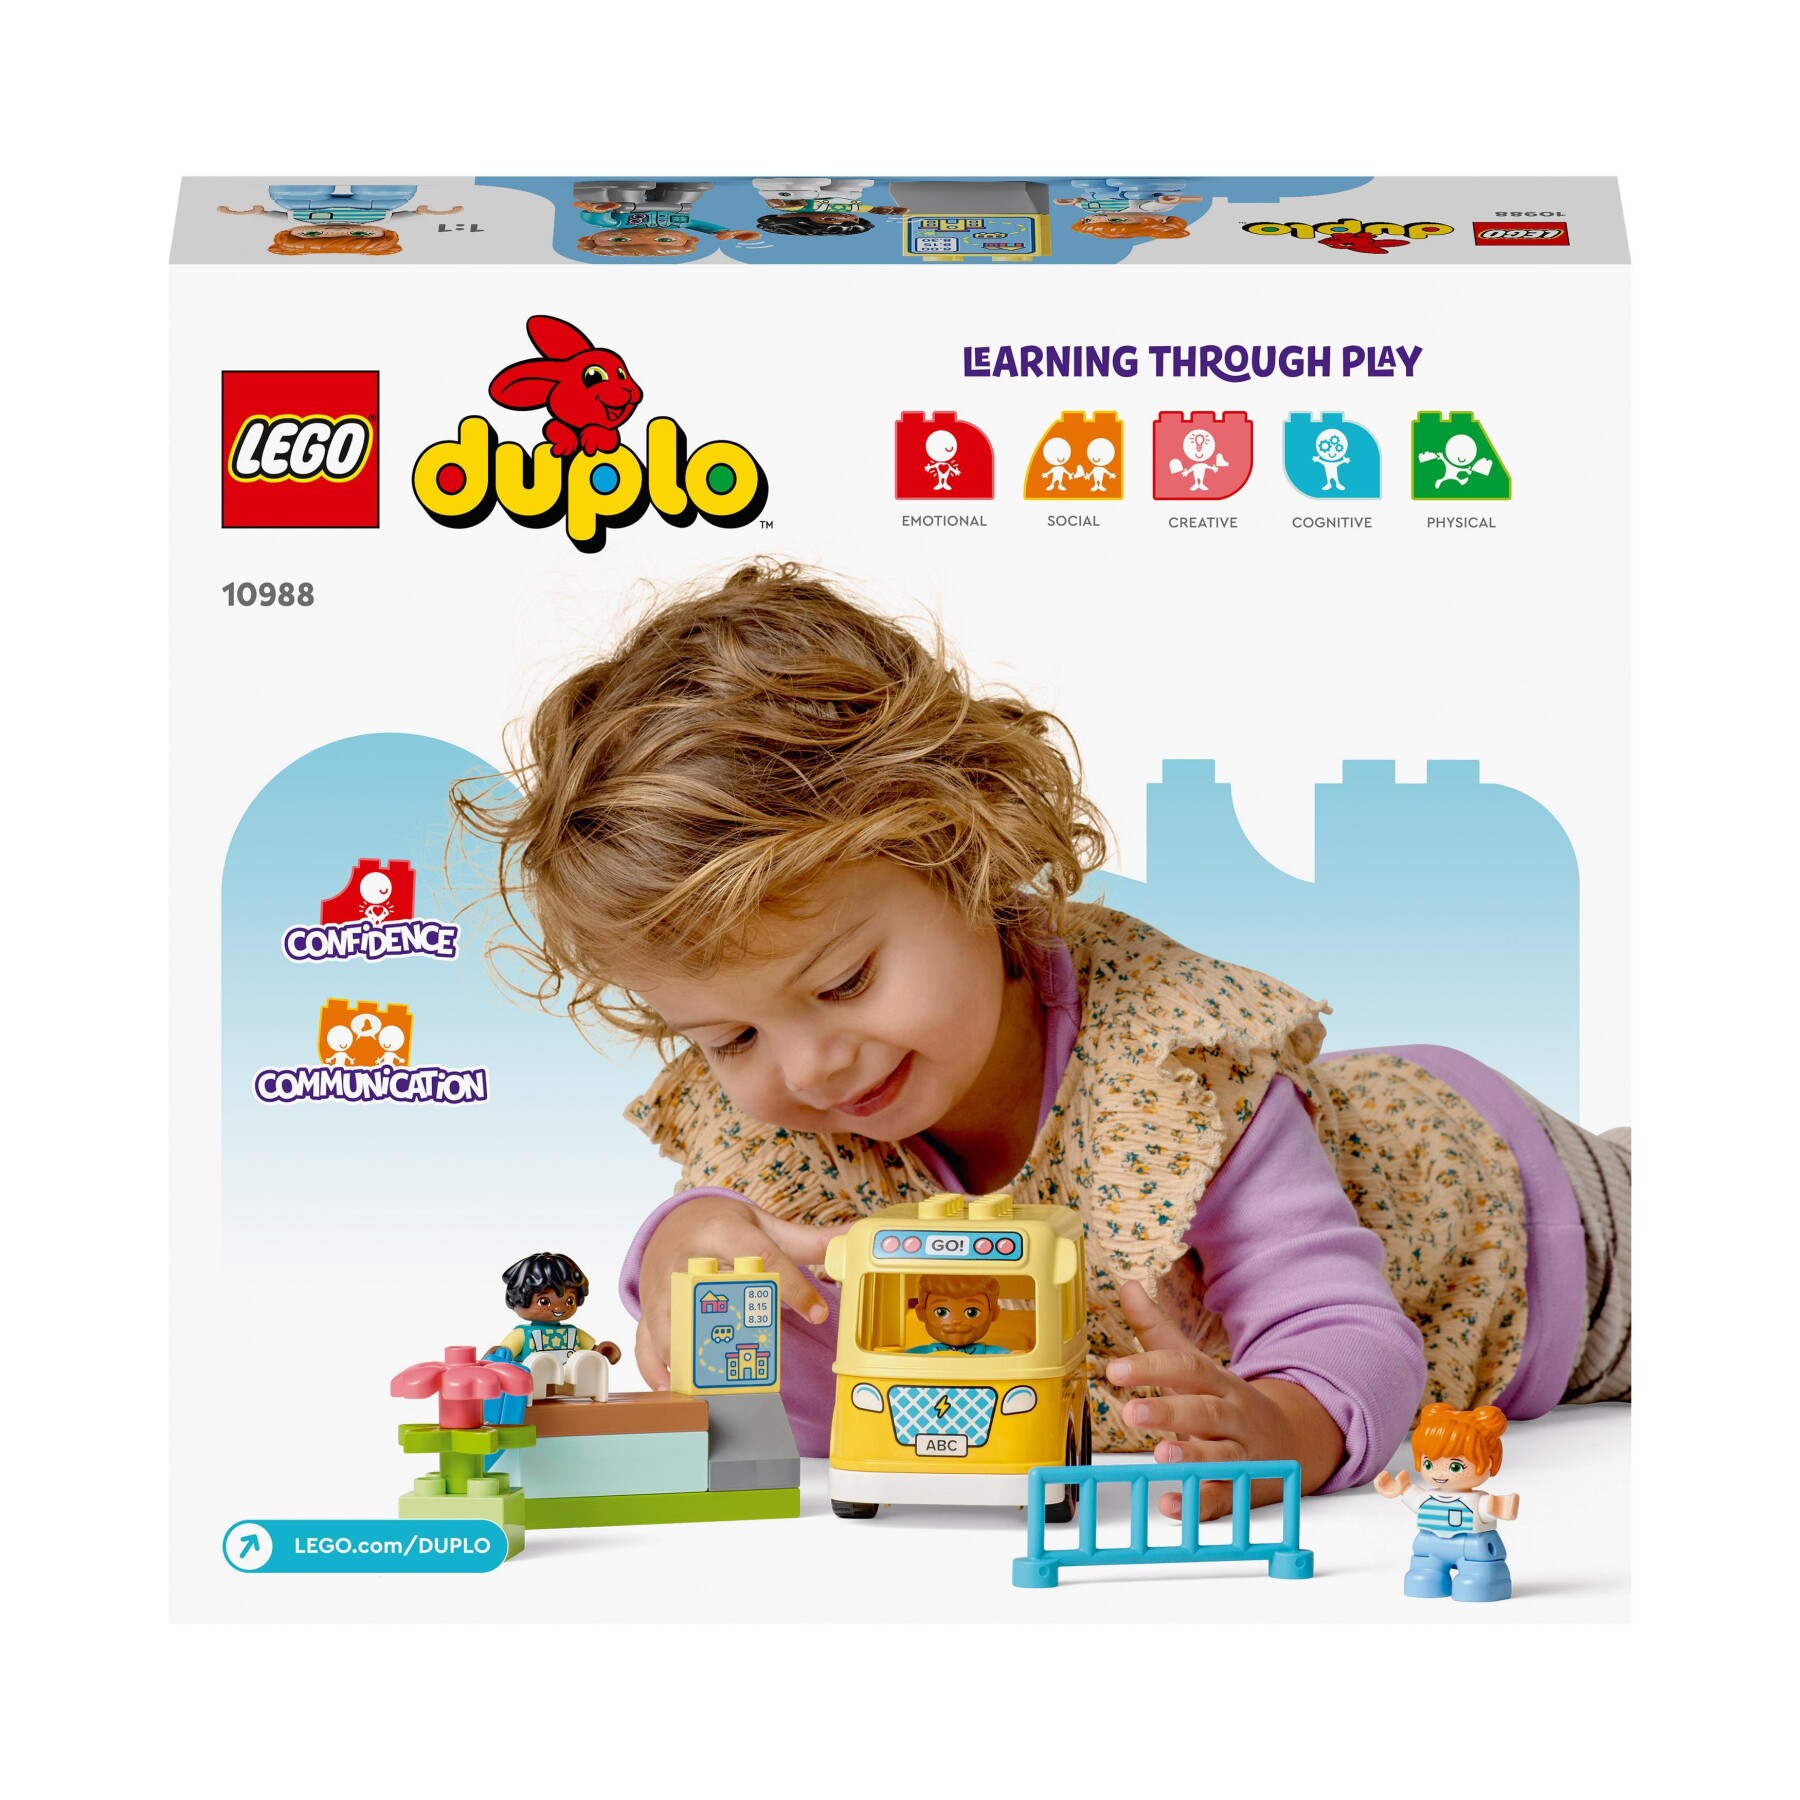 Lego duplo 10988 lo scuolabus, gioco educativo con veicolo e personaggi, regalo didattico per bambini e bambine da 2+ anni - LEGO DUPLO